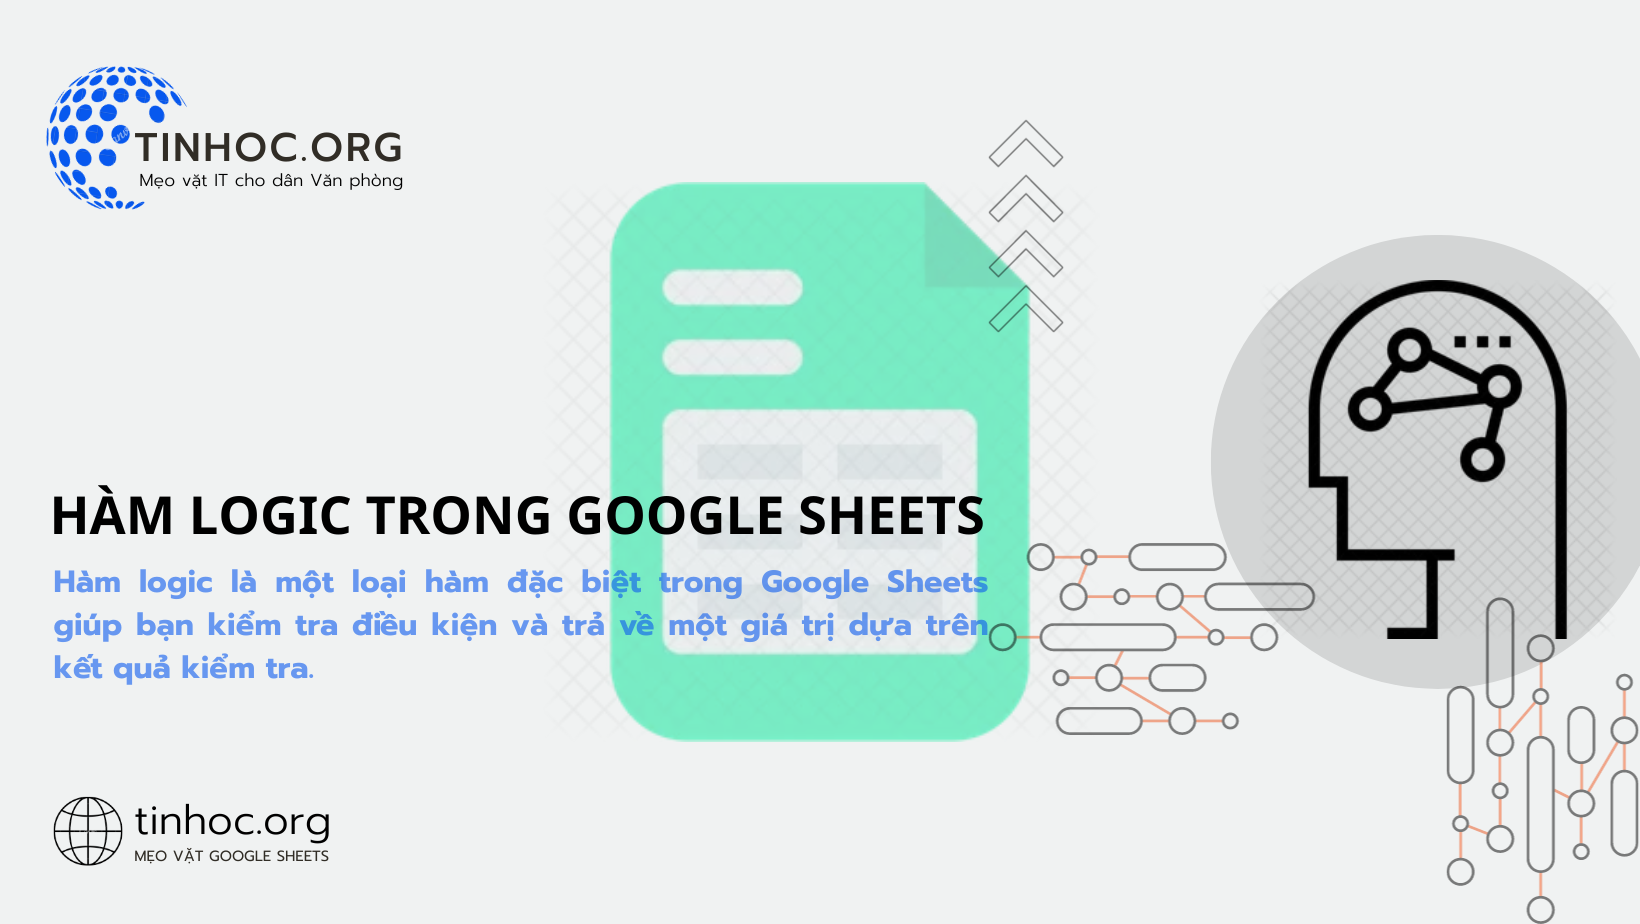 Hàm logic là một loại hàm đặc biệt trong Google Sheets giúp bạn kiểm tra điều kiện và trả về một giá trị dựa trên kết quả kiểm tra.